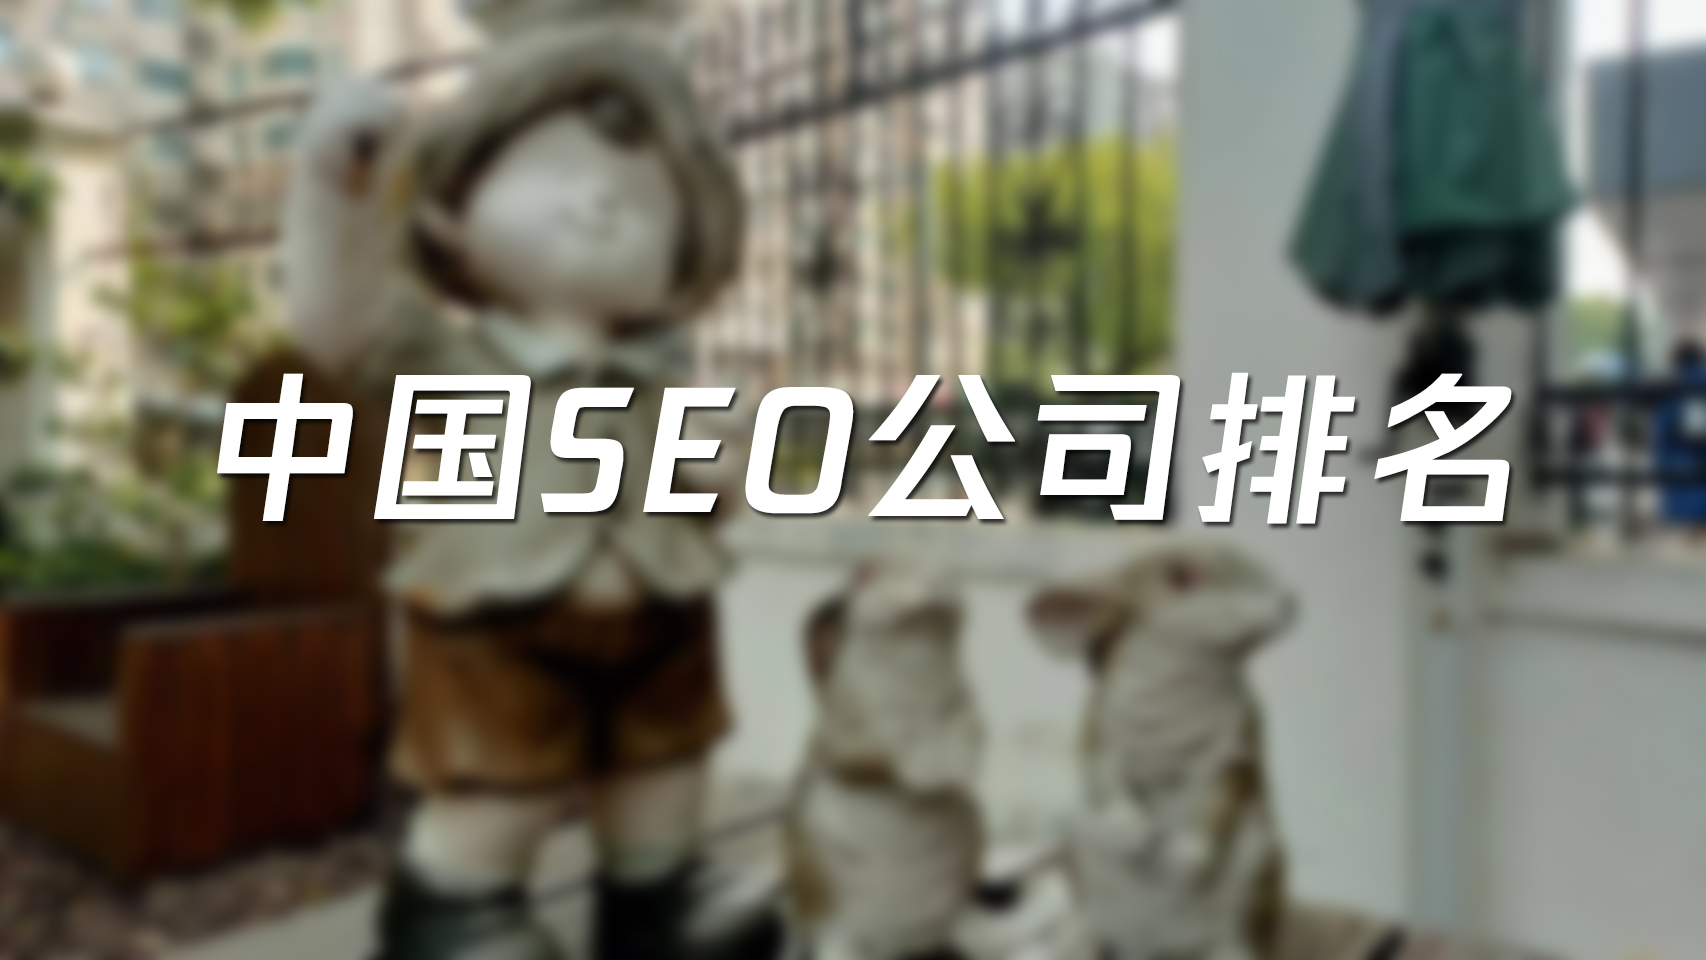 中国SEO公司排名网络营销外包